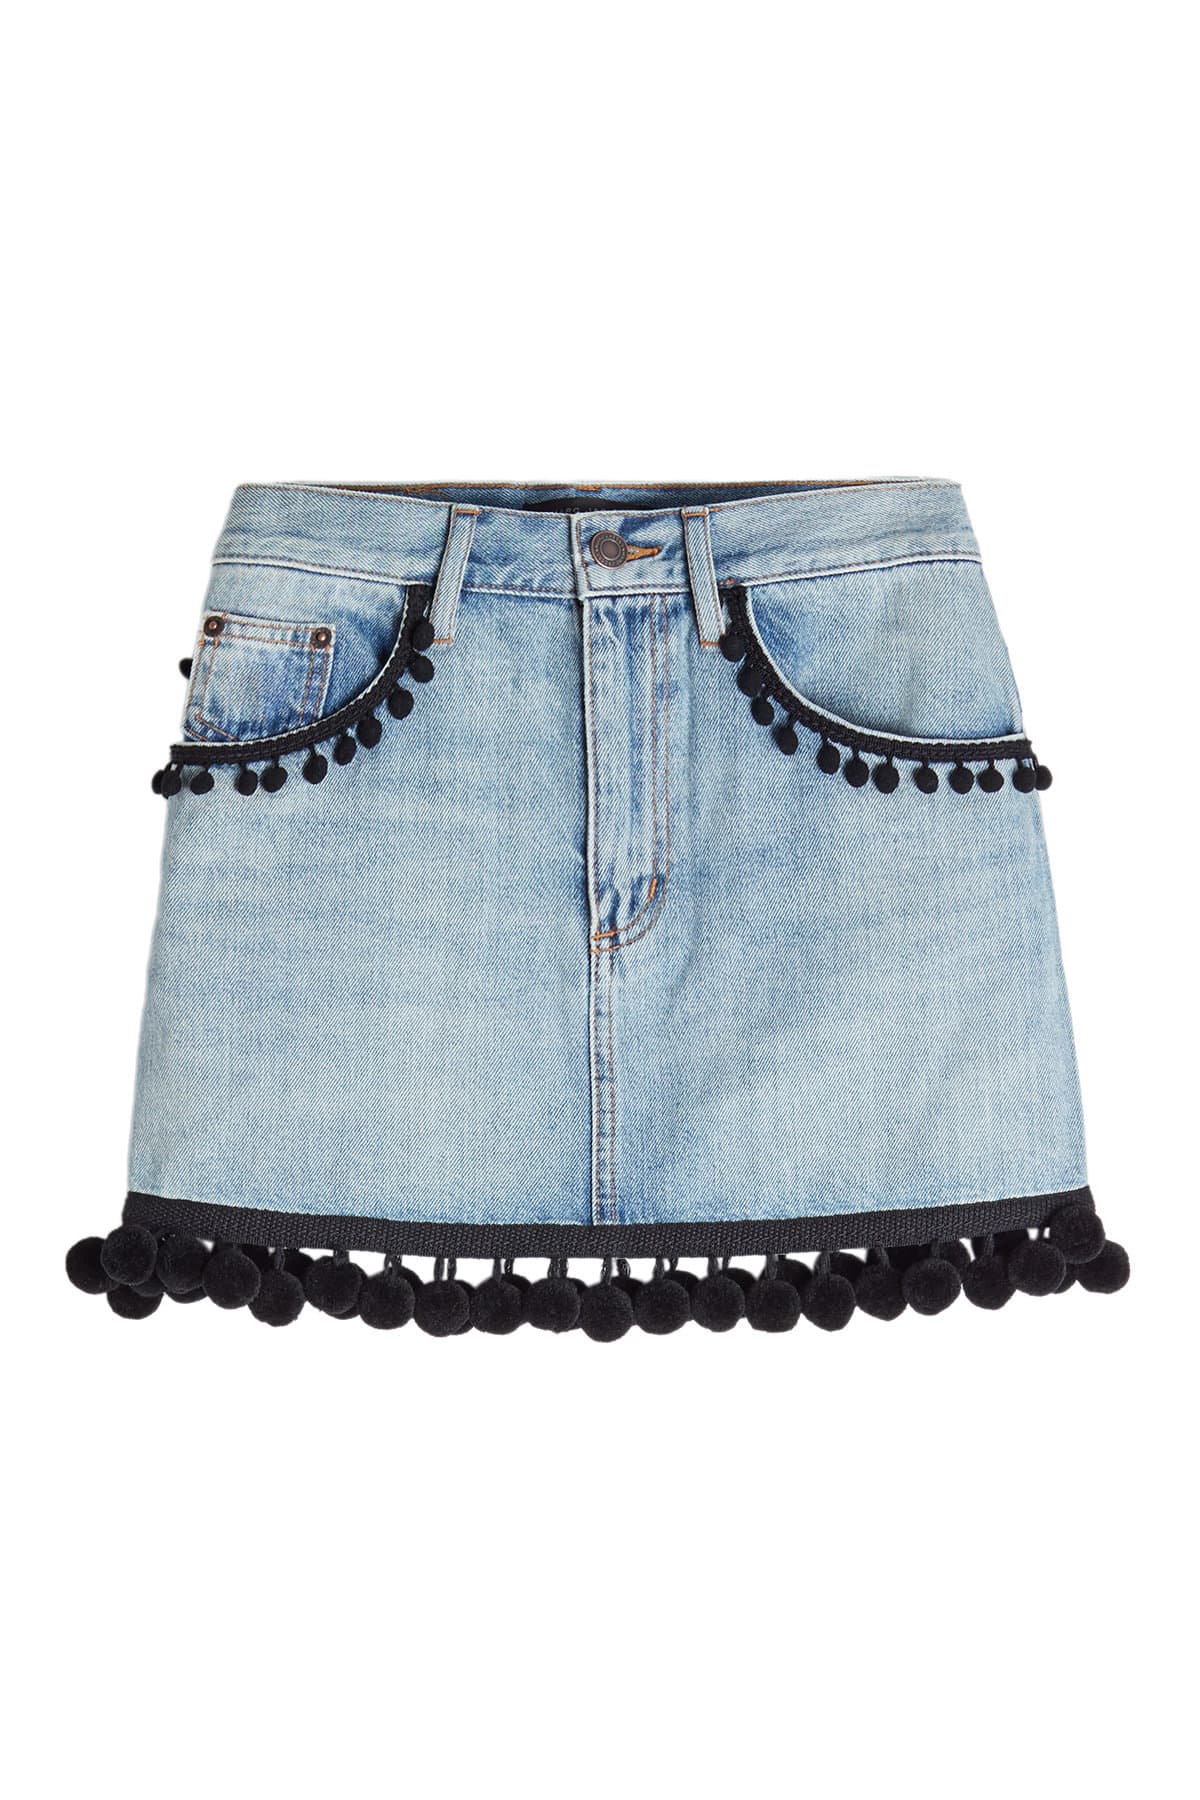 Marc Jacobs - Pom Pom Mini Skirt